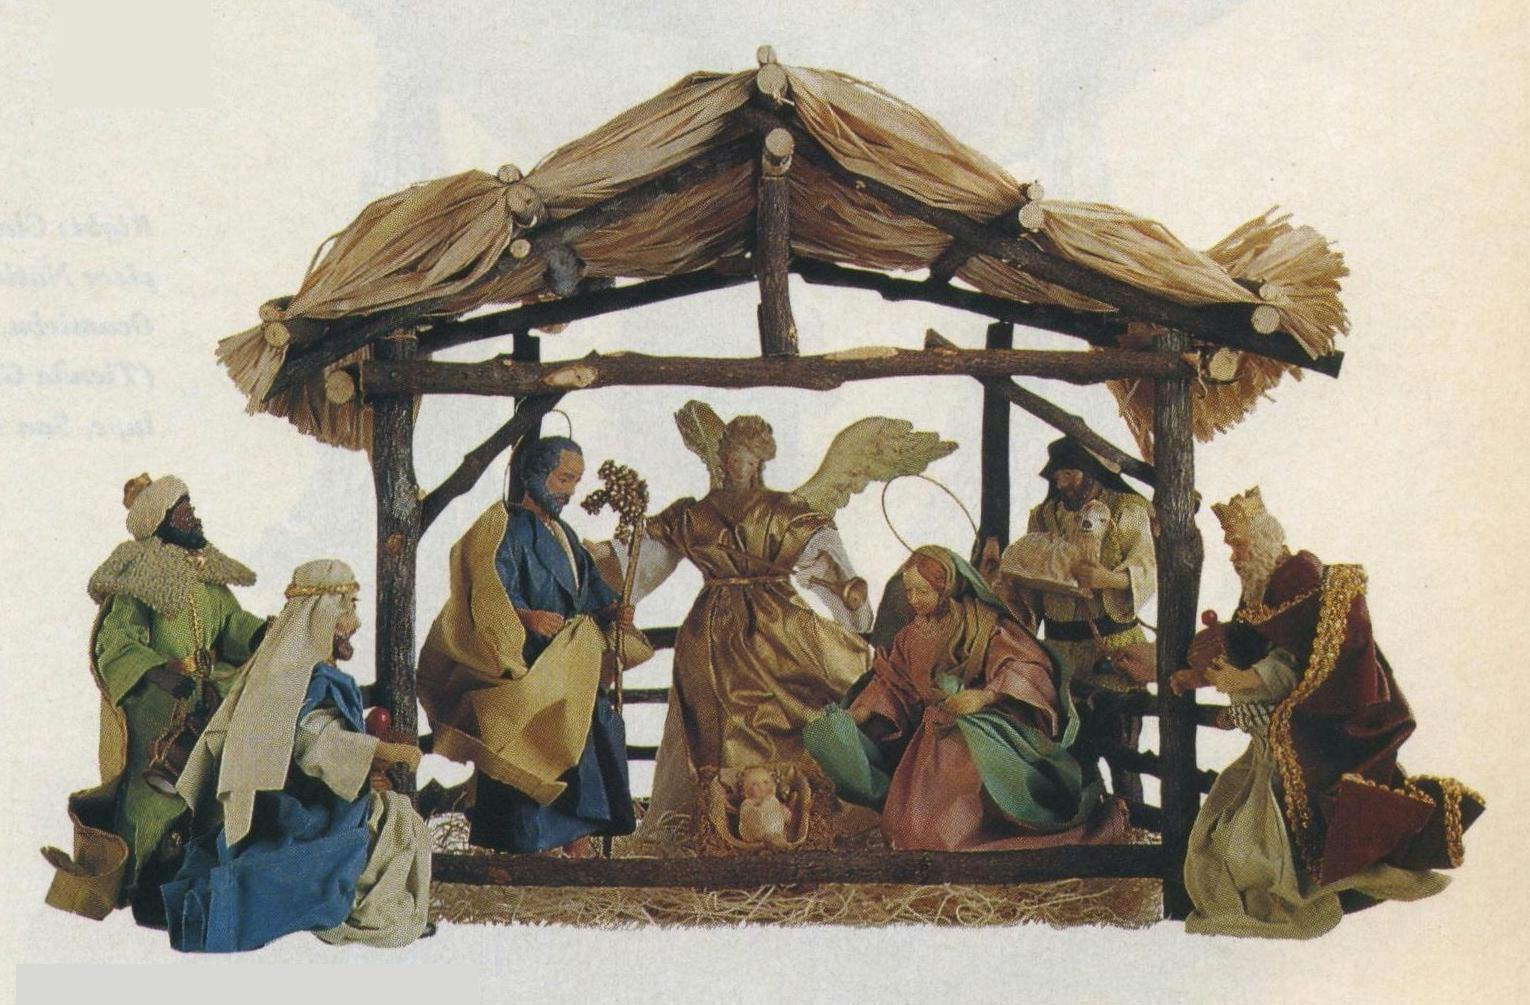 Italian Renaissance knockoff Nativity from Taiwan (Hendley Market).